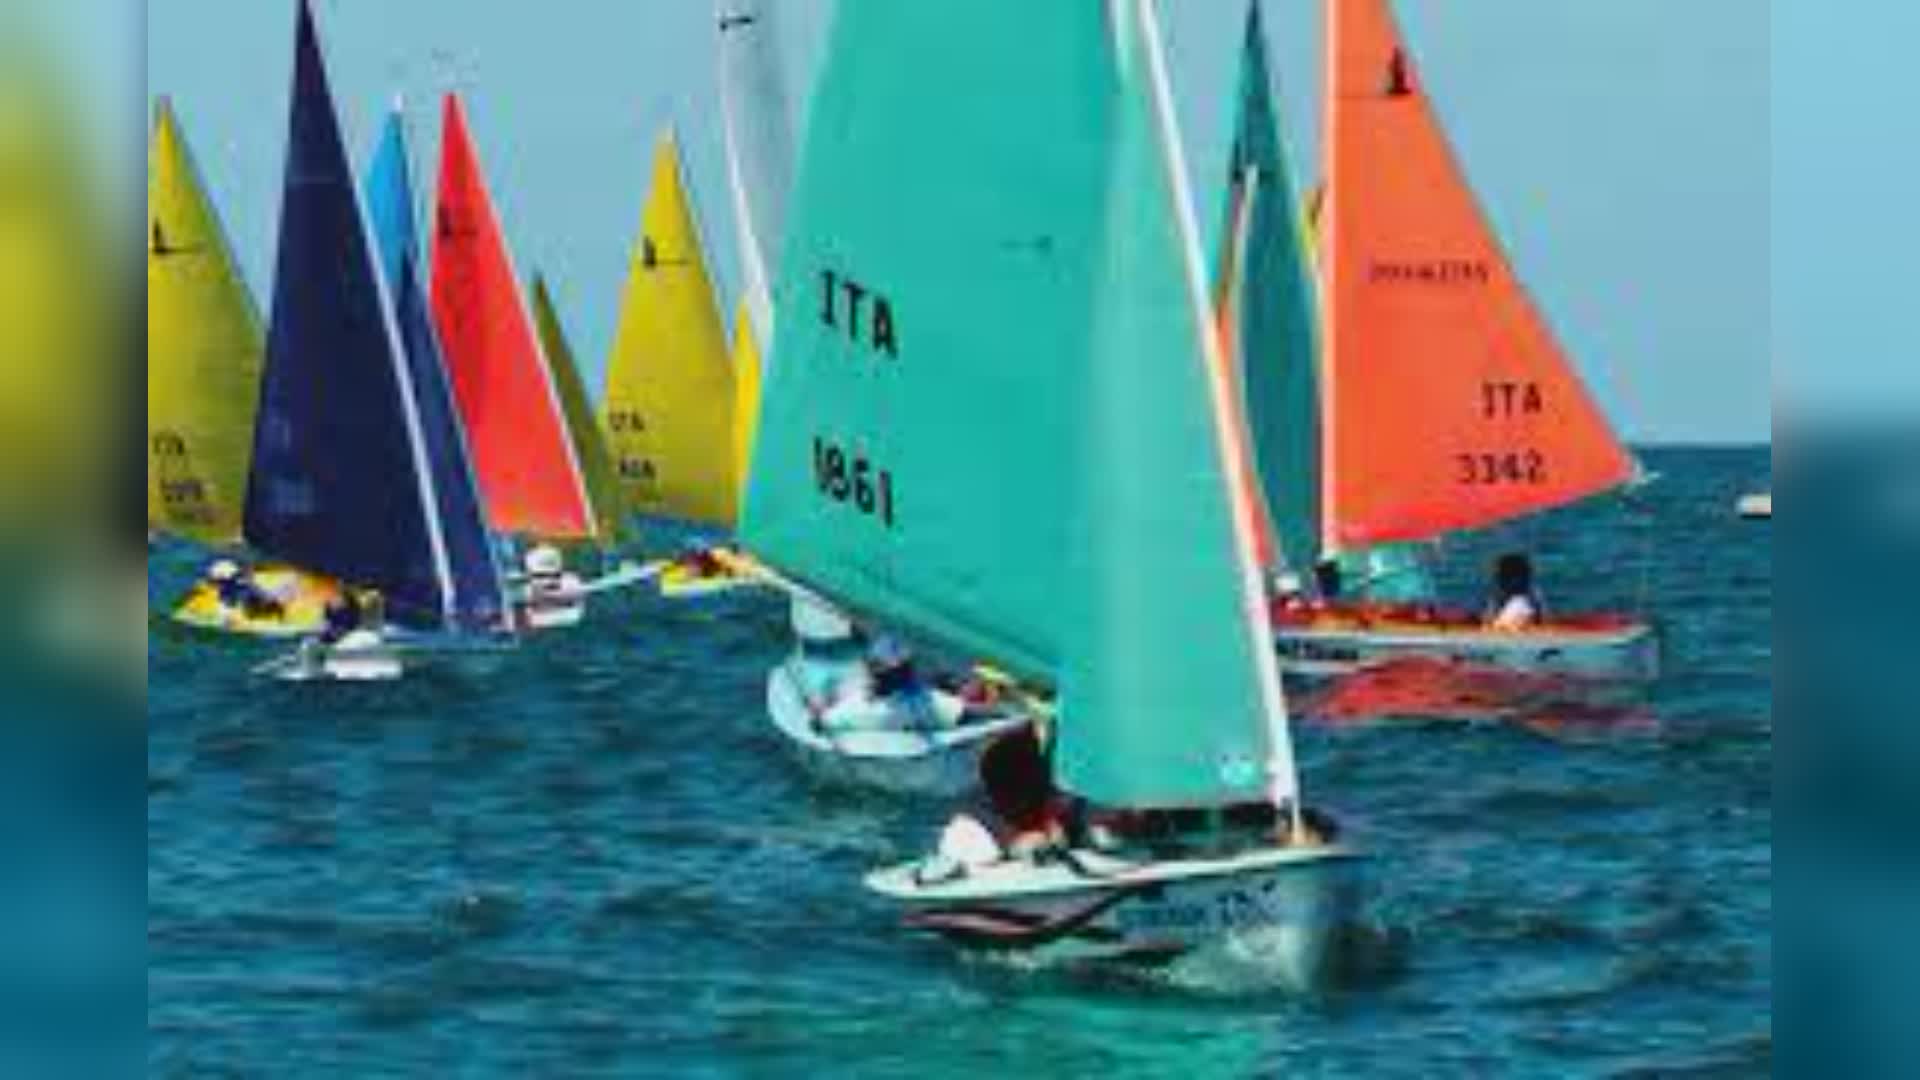 La Spezia: apre scuola paralimpica di vela